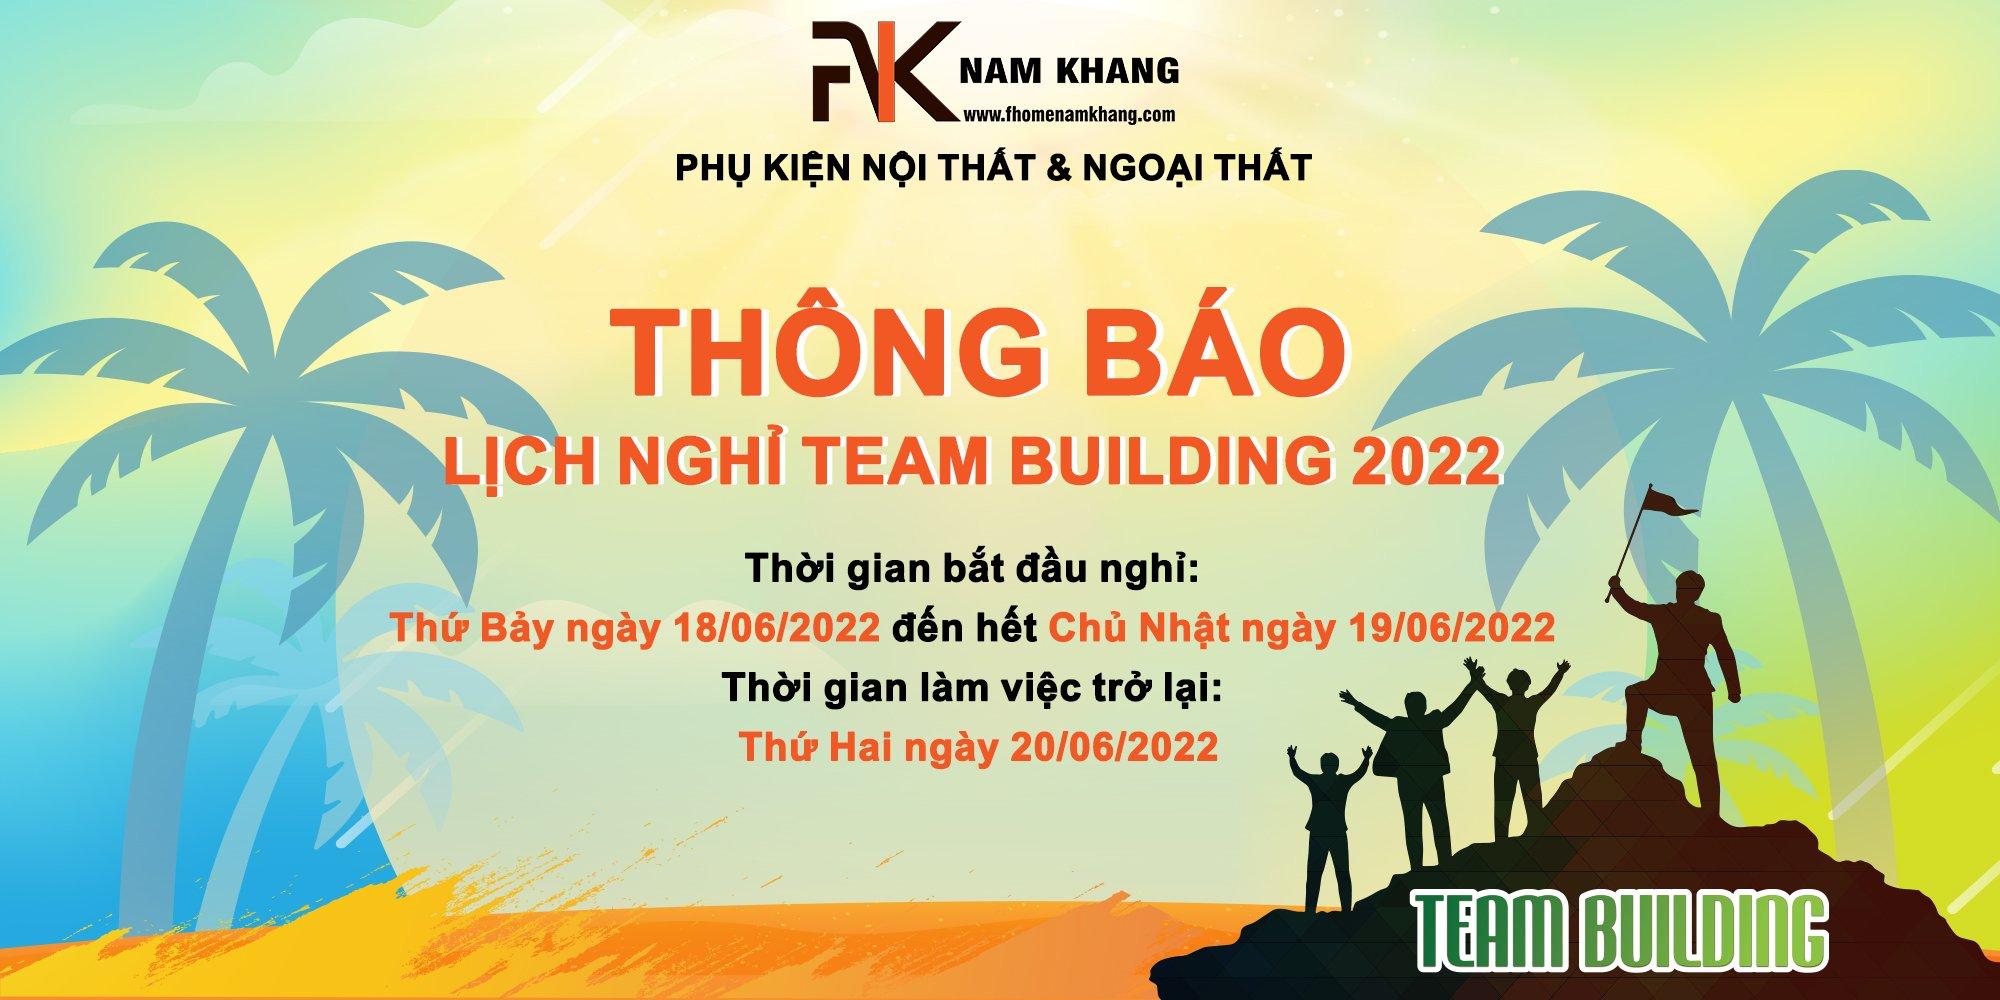 THÔNG BÁO LỊCH NGHỈ TEAM BUILDING NĂM 2022